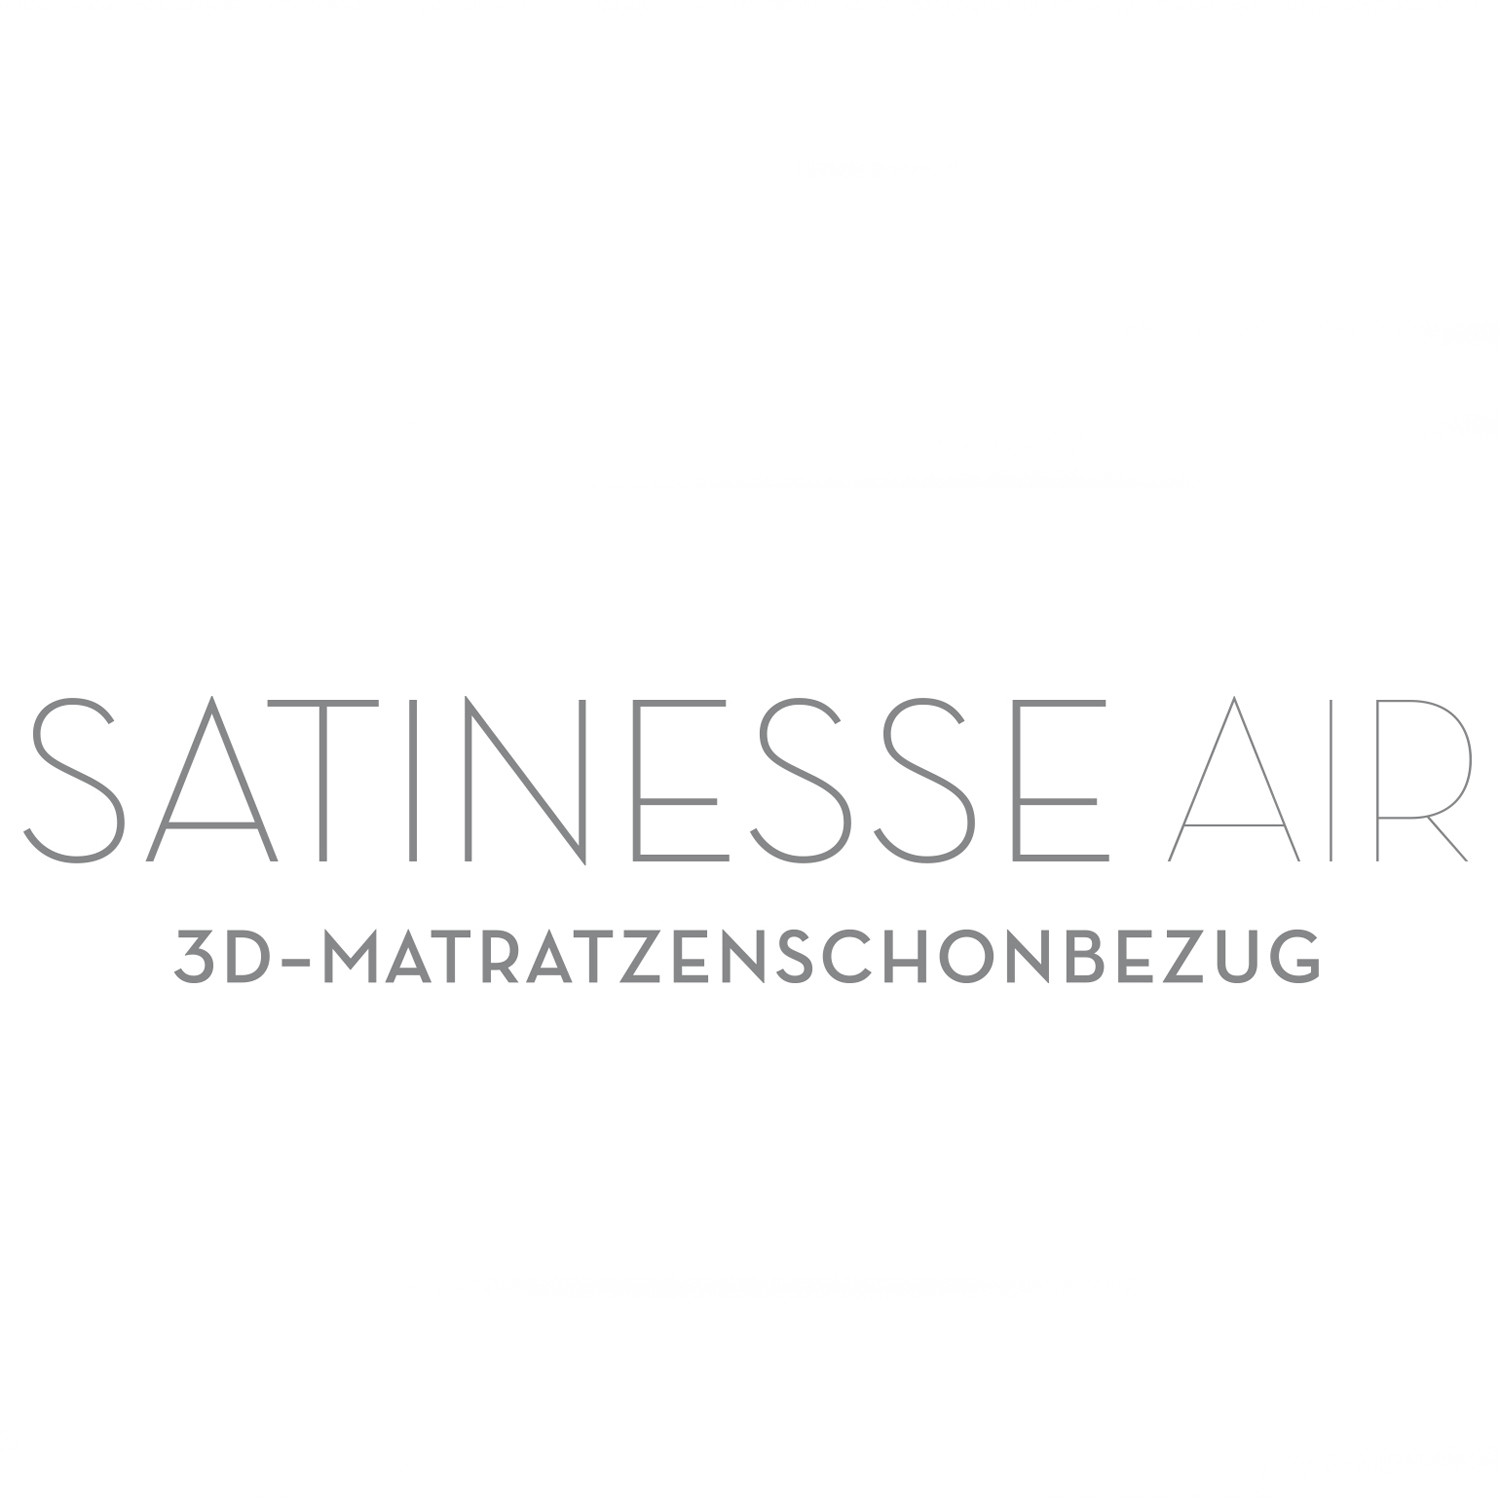 FORMESSE Kissenschonbezug Satinesse Air Silver wollweiß 60x60cm